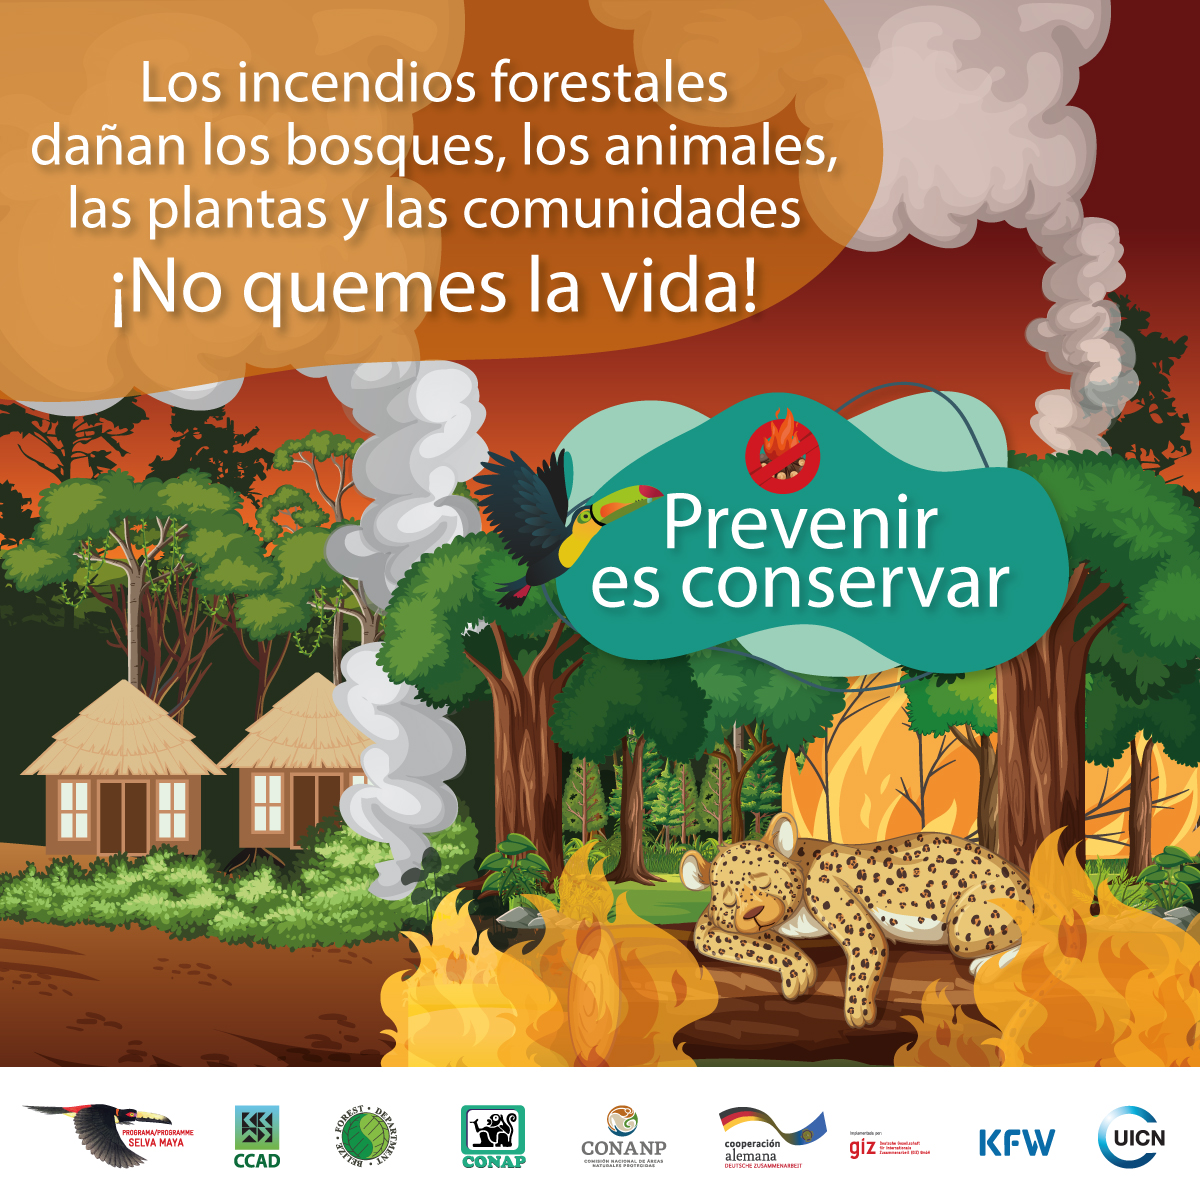 Los #IncendiosForestales dañan los bosques, los animales, las plantas y las comunidades, #NoQuemesLaVida, #PrevenirEsConservar.

☎️Repórtalos al 119